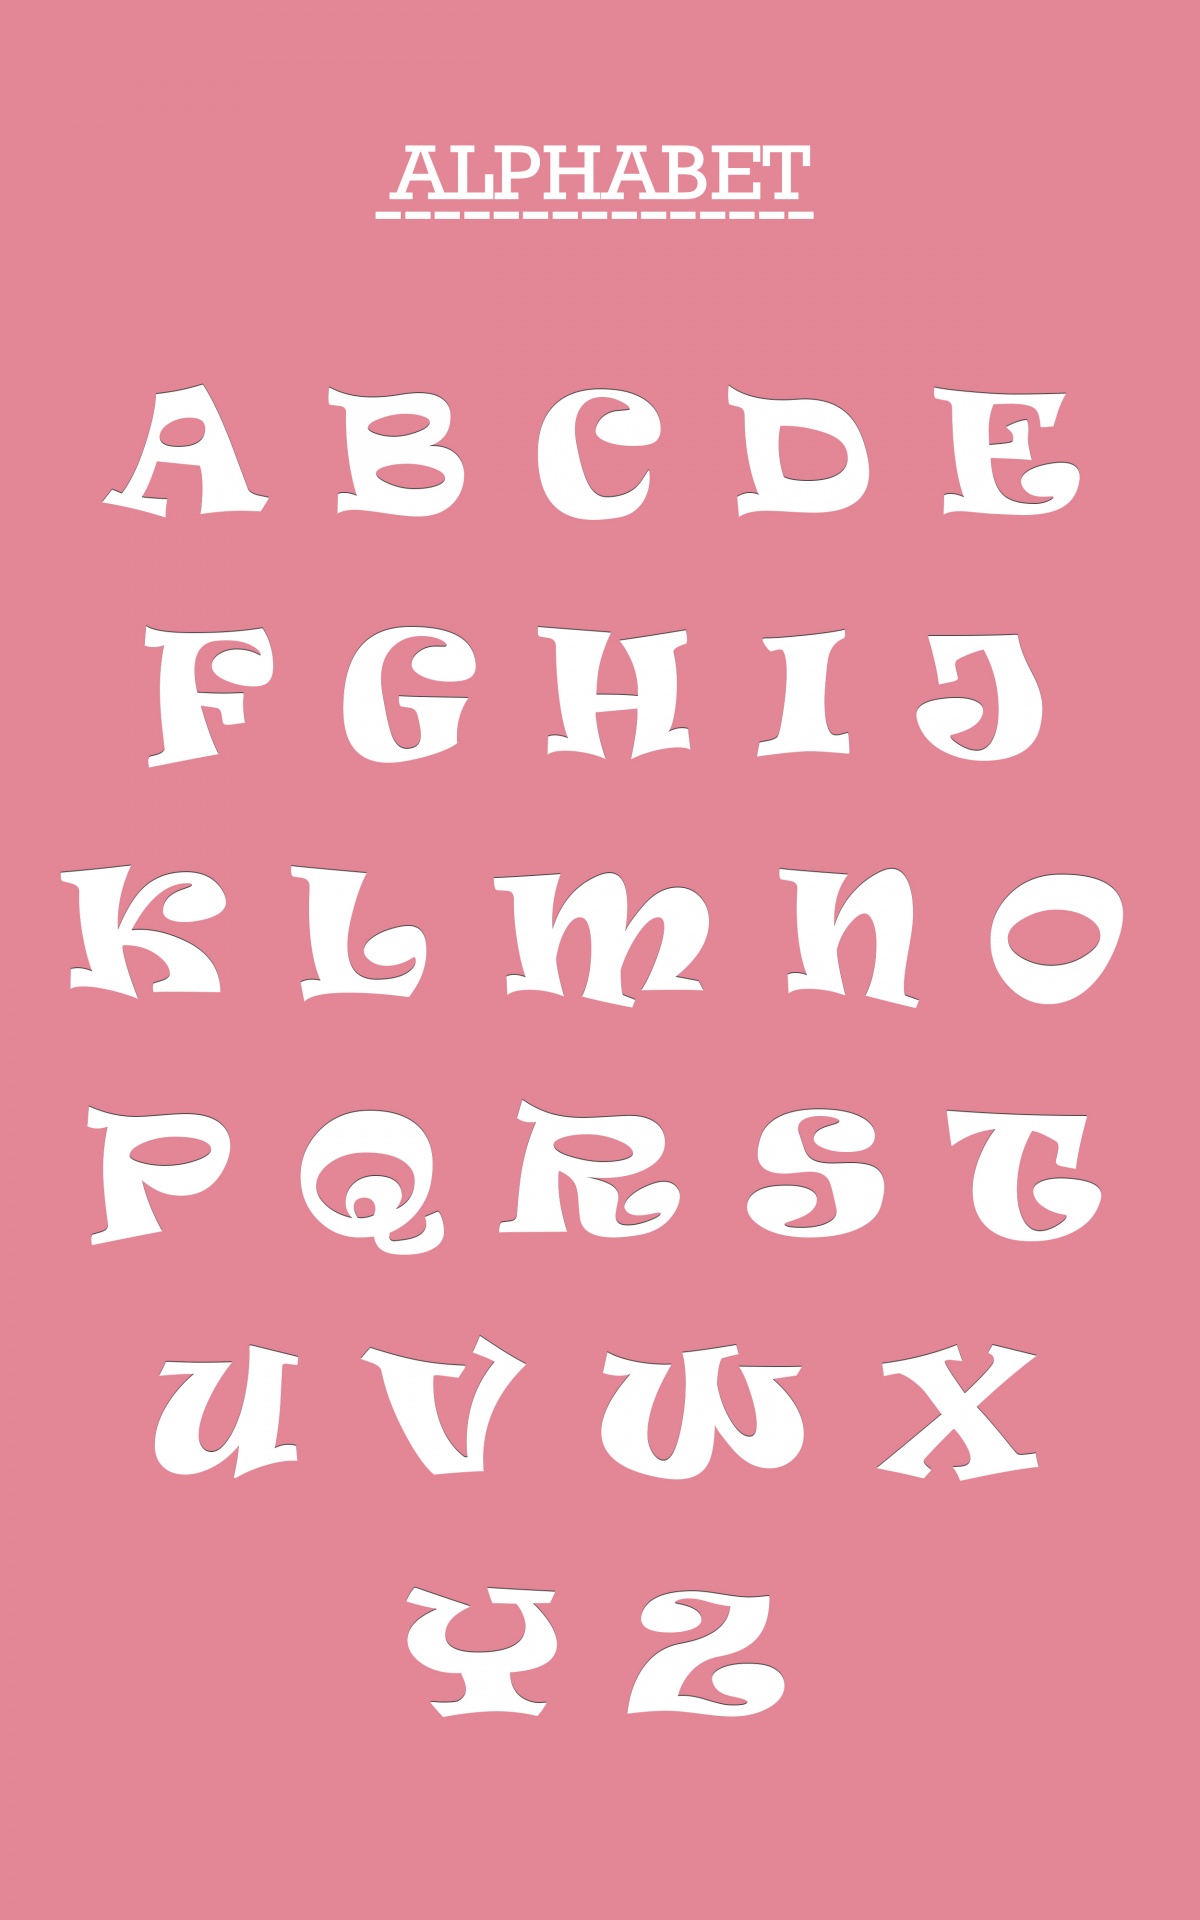 alphabet-letters-set-free-stock-photo-public-domain-pictures